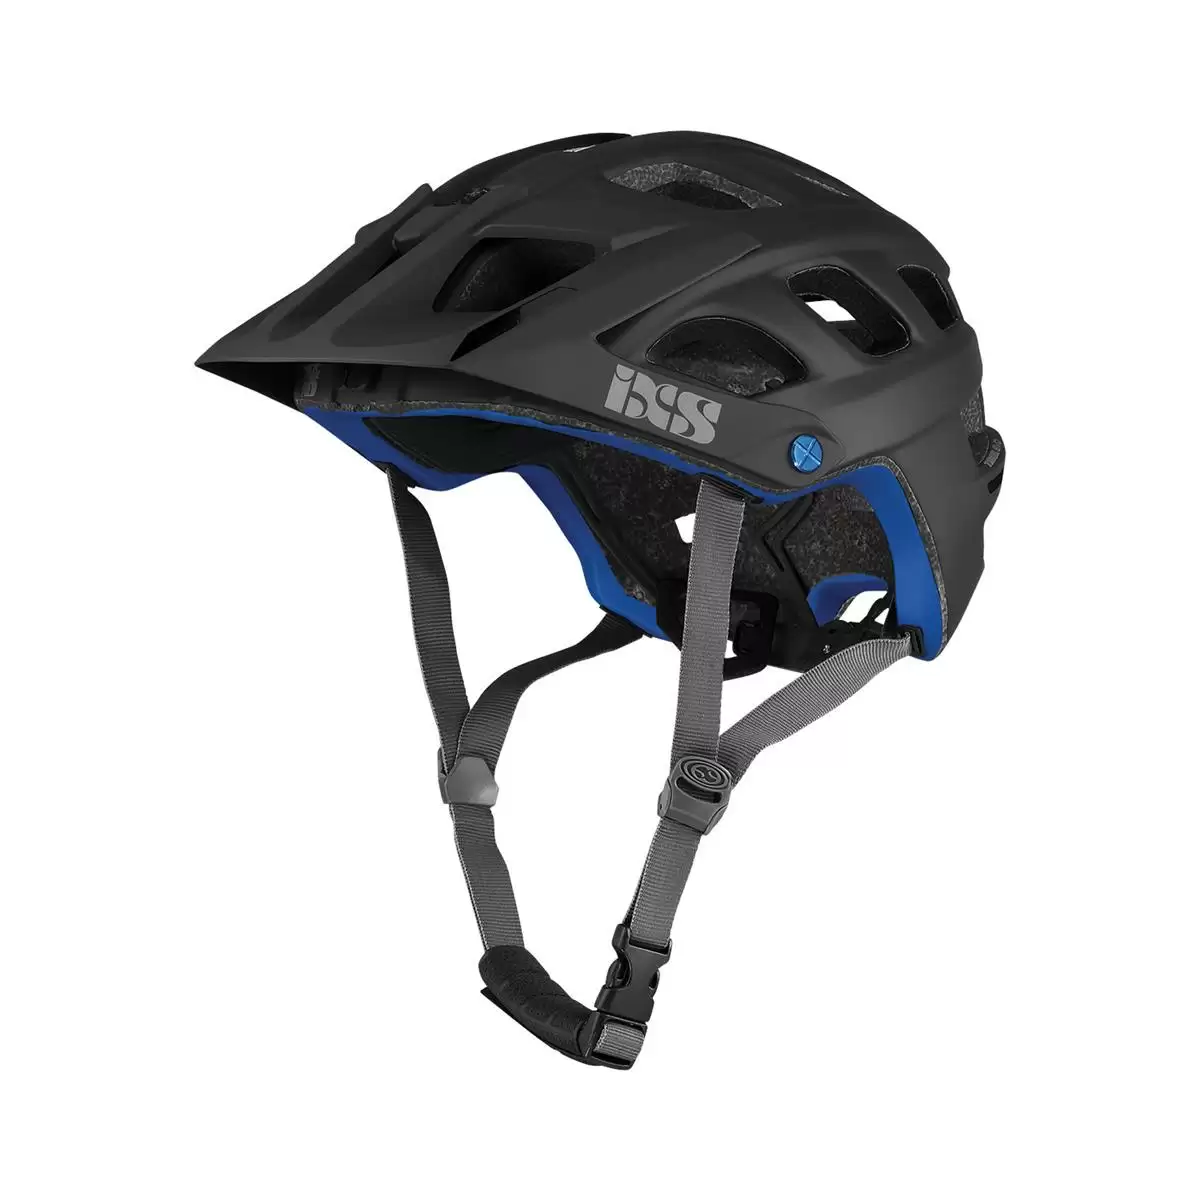 Henduro Helmet Trail Evo E-Bike Edition Black Size XS/S (49-54cm) - image